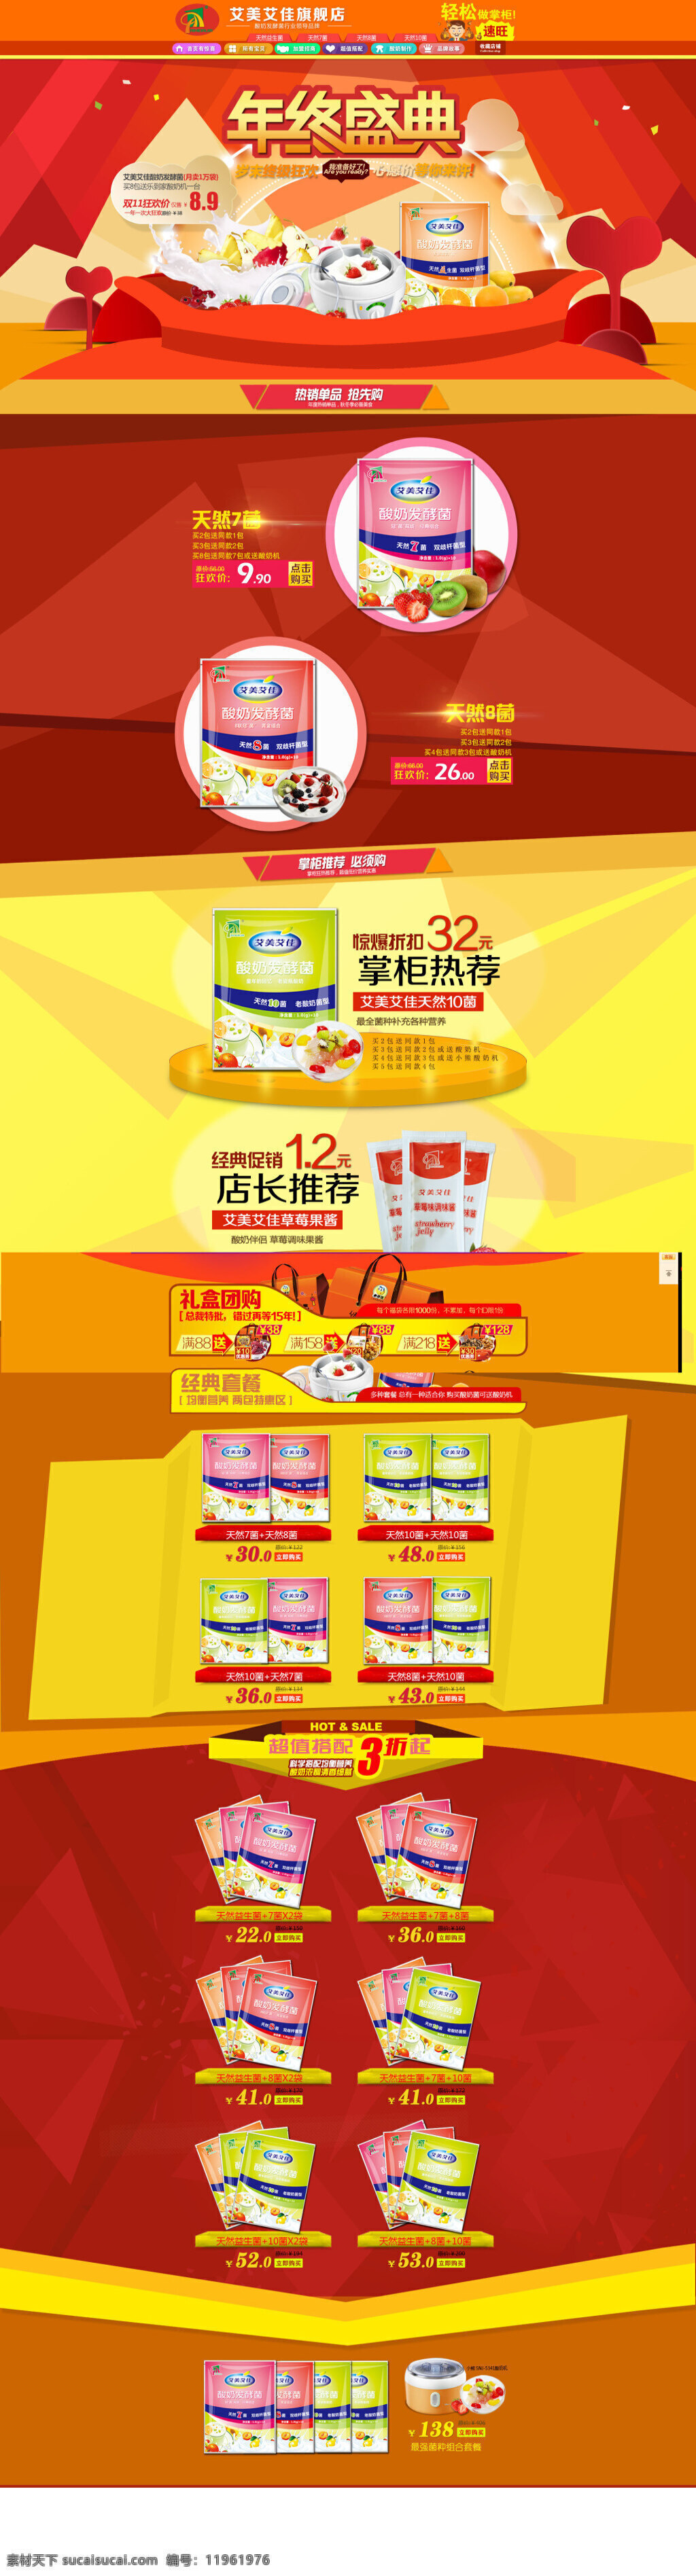 淘宝 店铺 自制 酸奶 海报 模版 首页活动海报 打折海报 天猫海报 红色